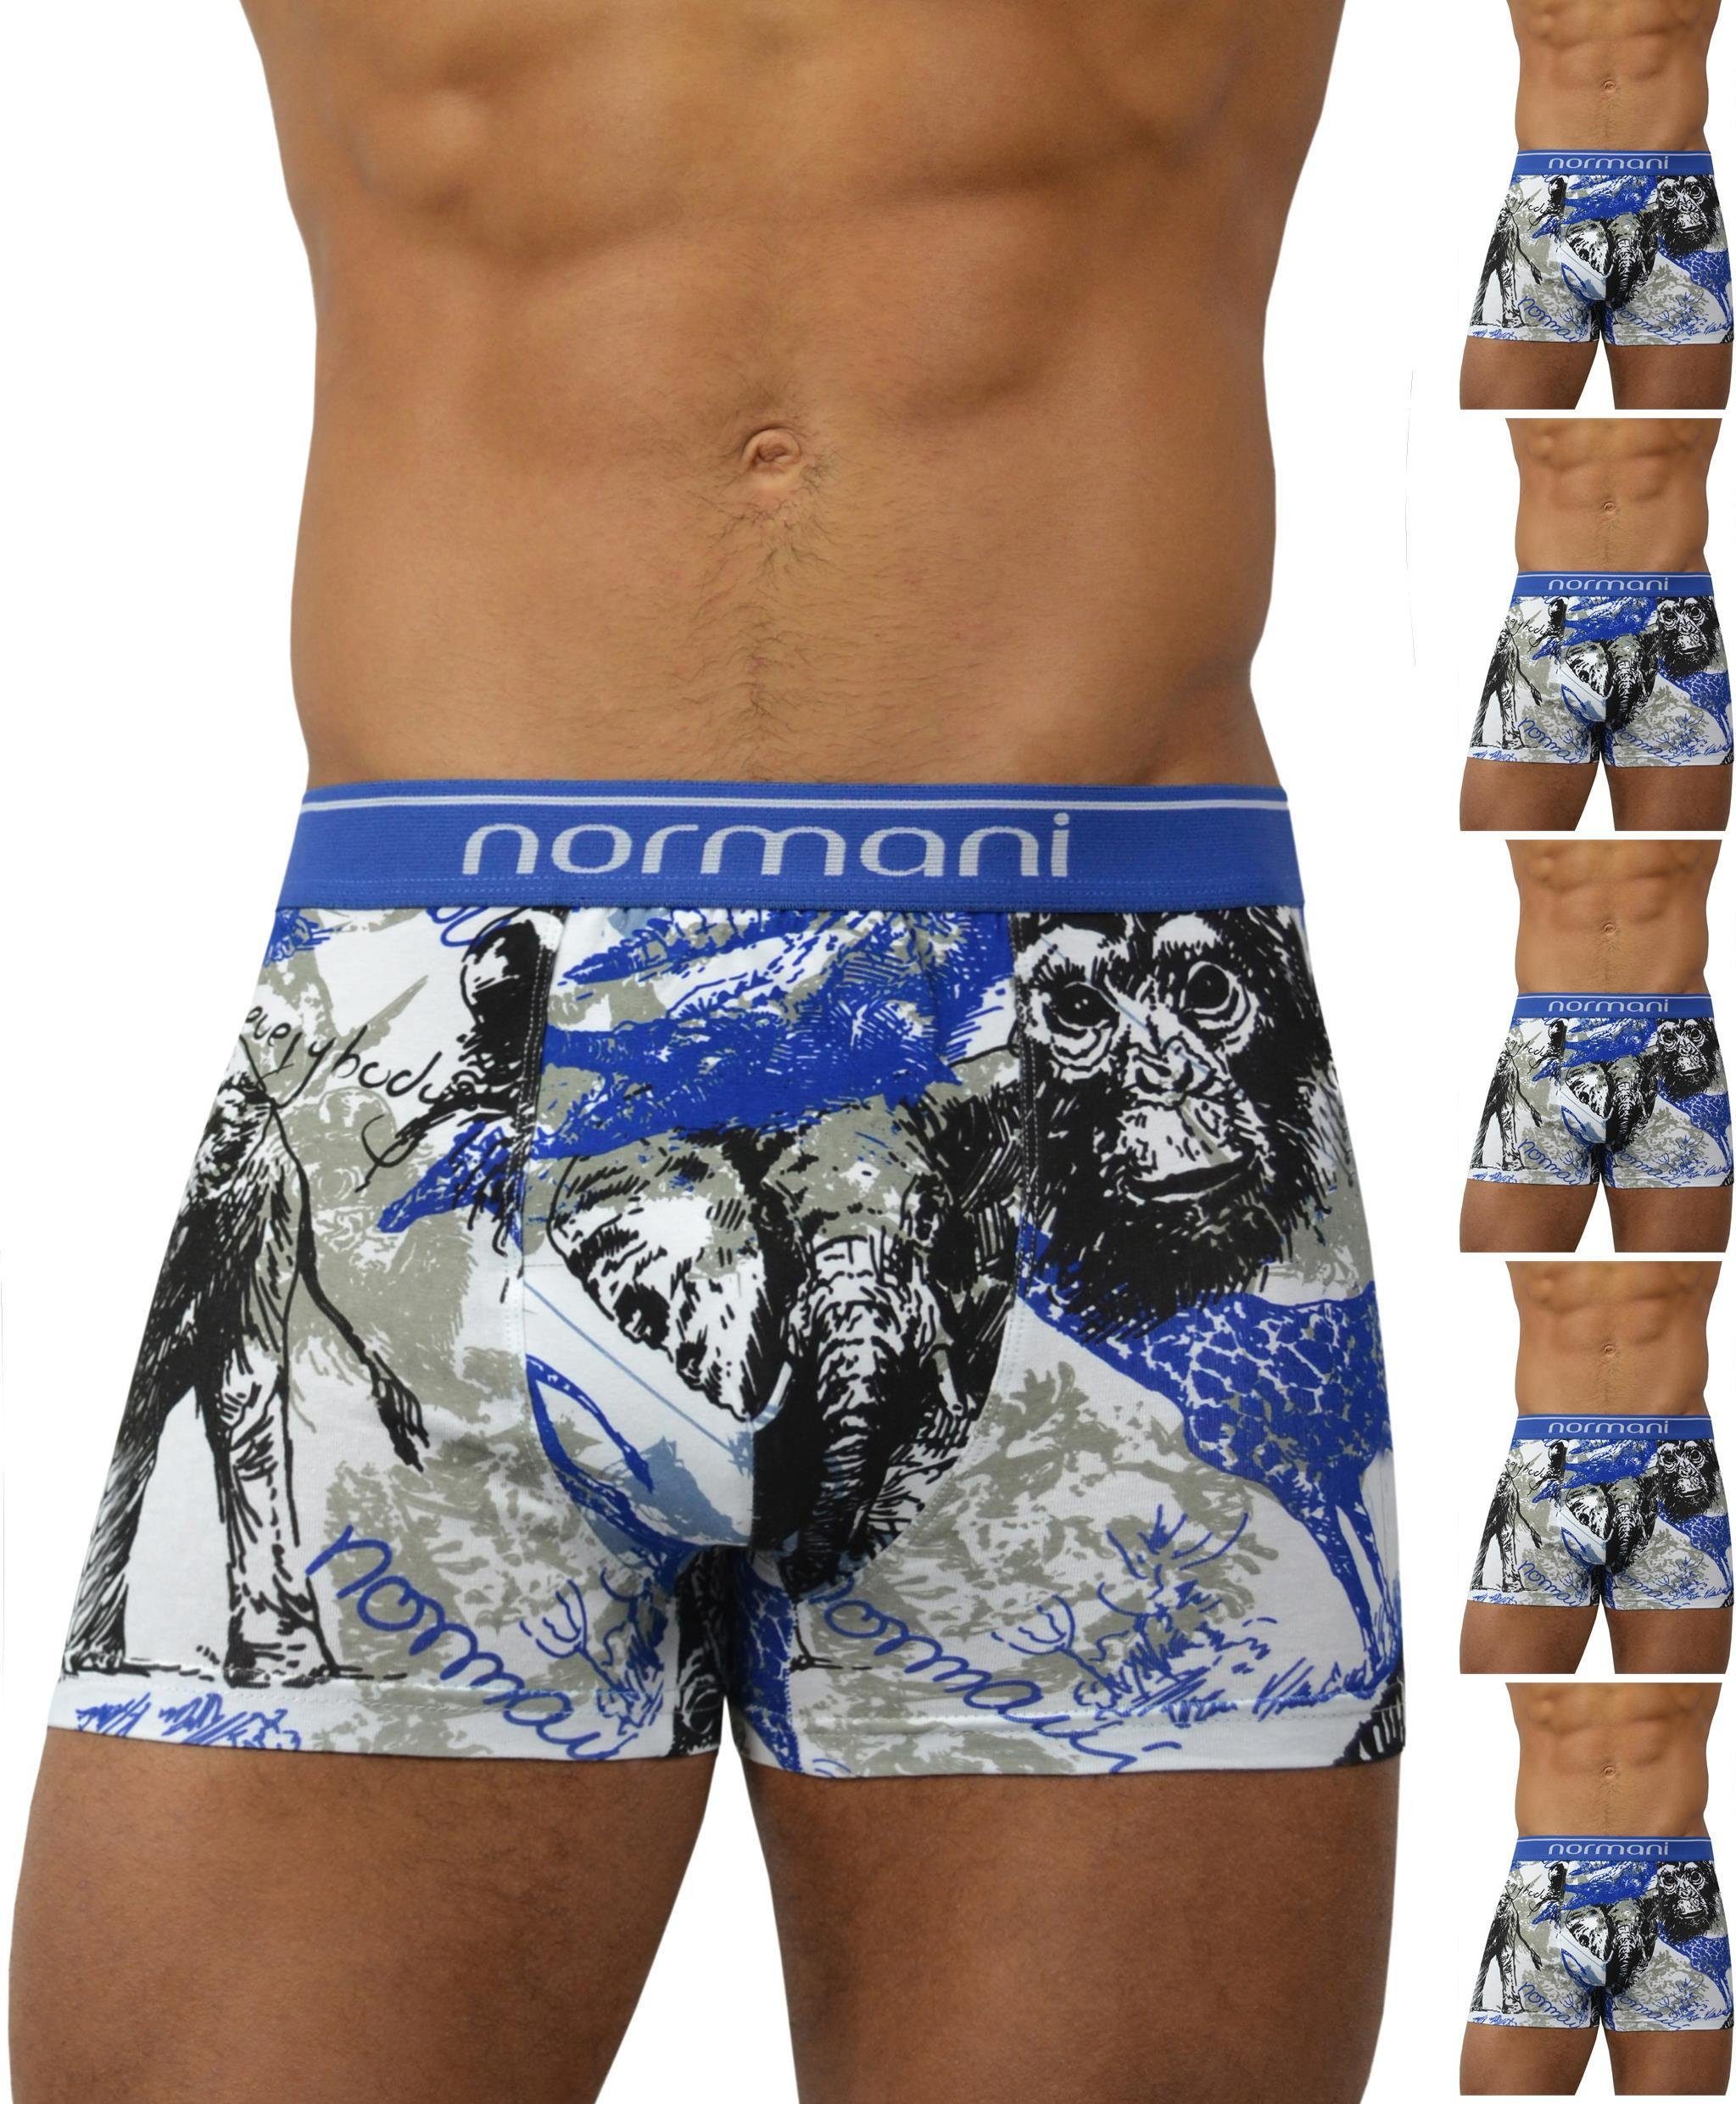 normani Retro Boxer 6 Stück Retro Boxershorts aus Baumwolle Unterhose aus atmungsaktiver Baumwolle Wild Animal